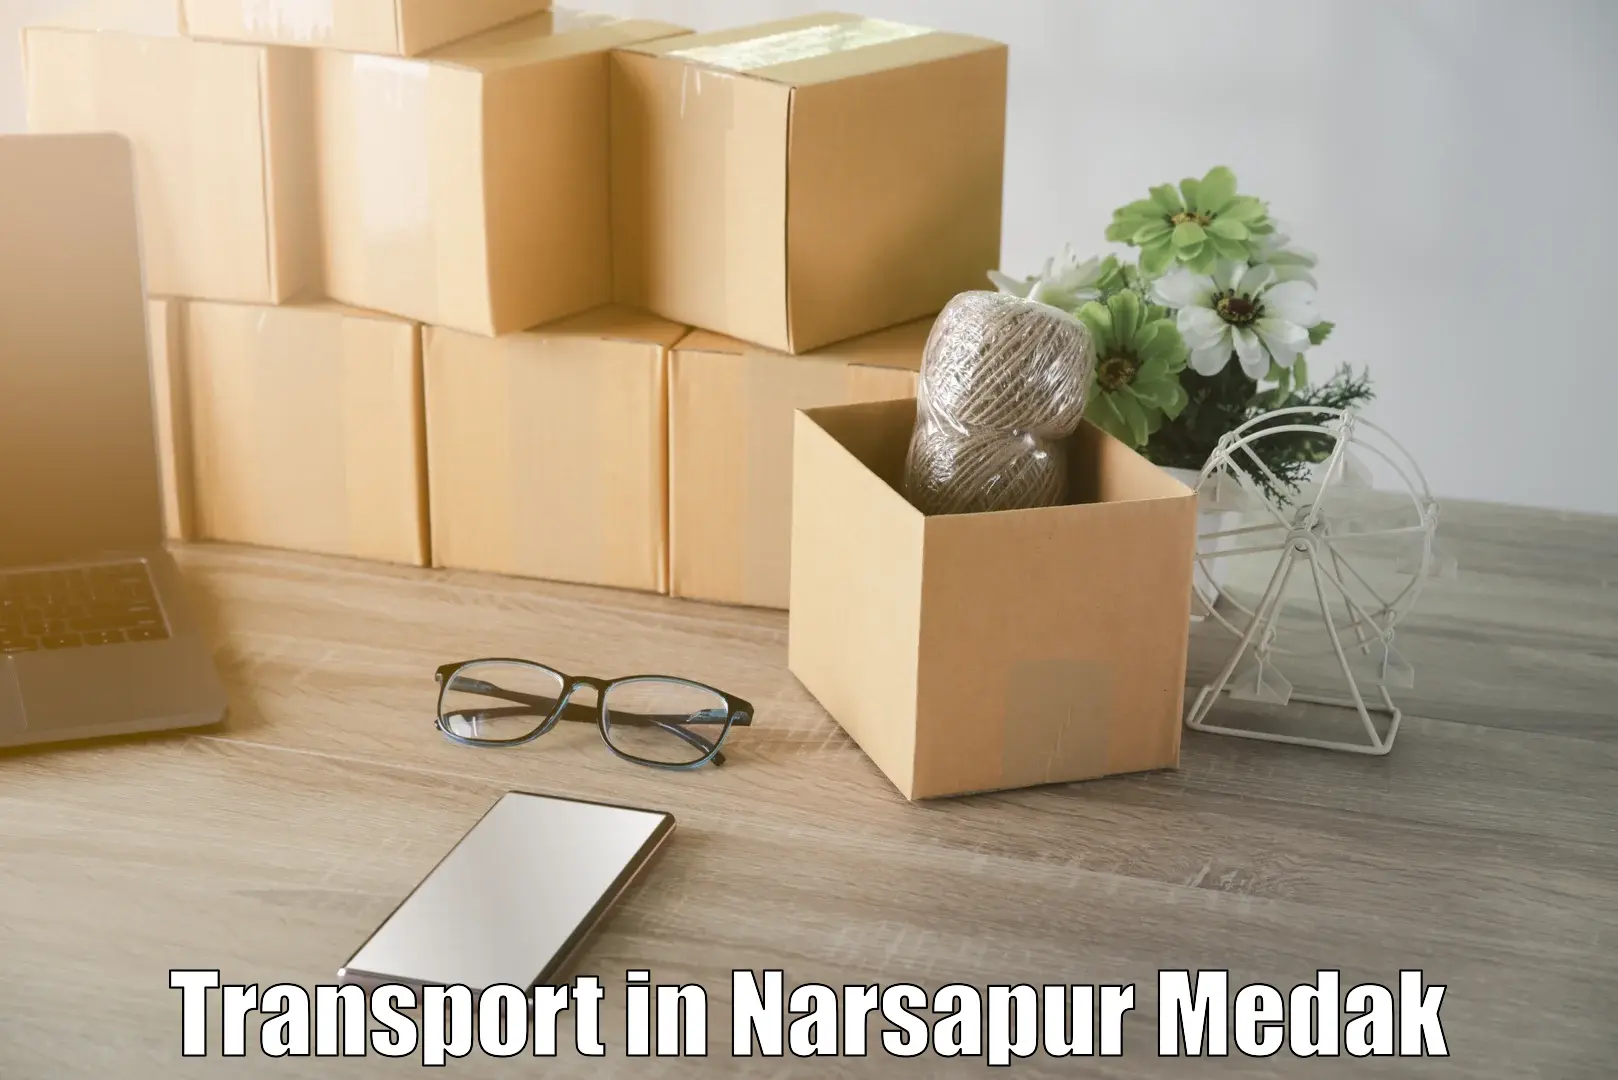 Nearby transport service in Narsapur Medak